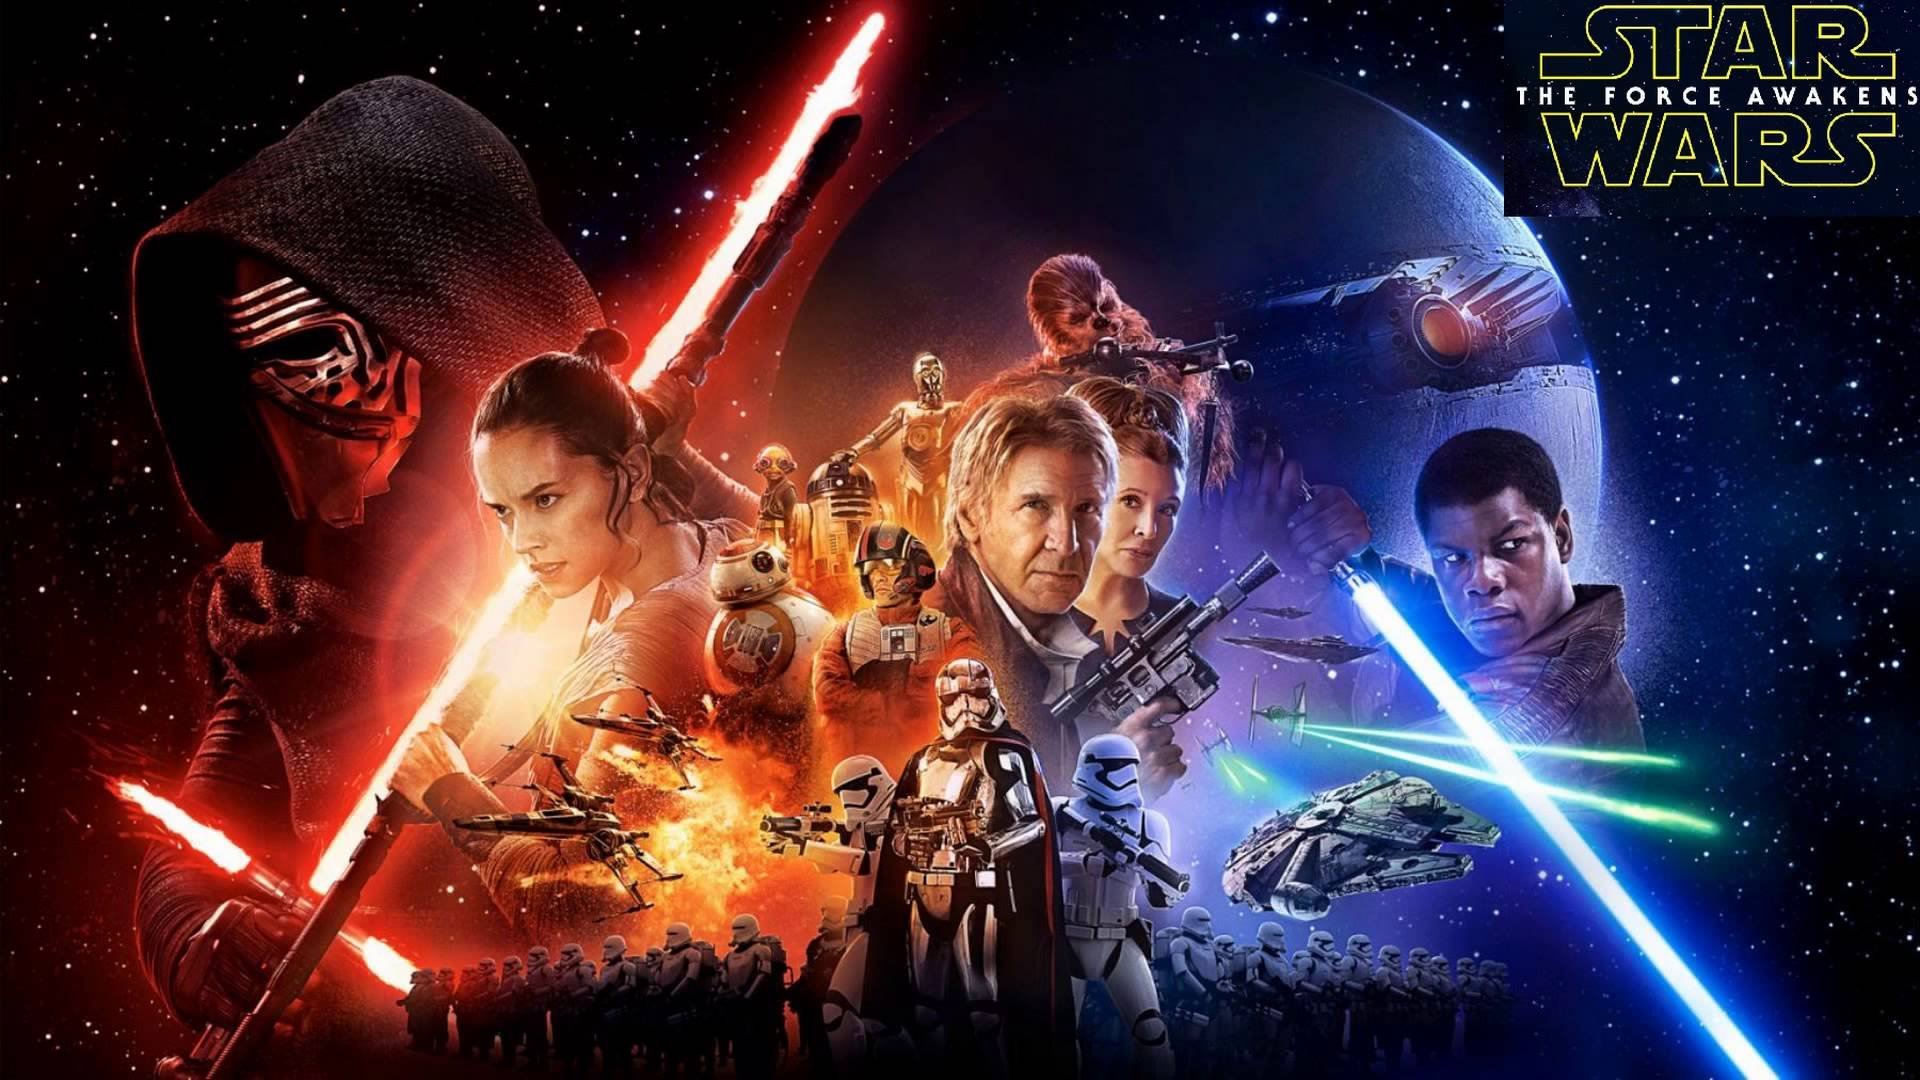 star, Wars, Force, Awakens, Sci fi, Futuristic, Action, Fighting, 1star wars force awakens, Adventure, Disney, Poster Wallpaper